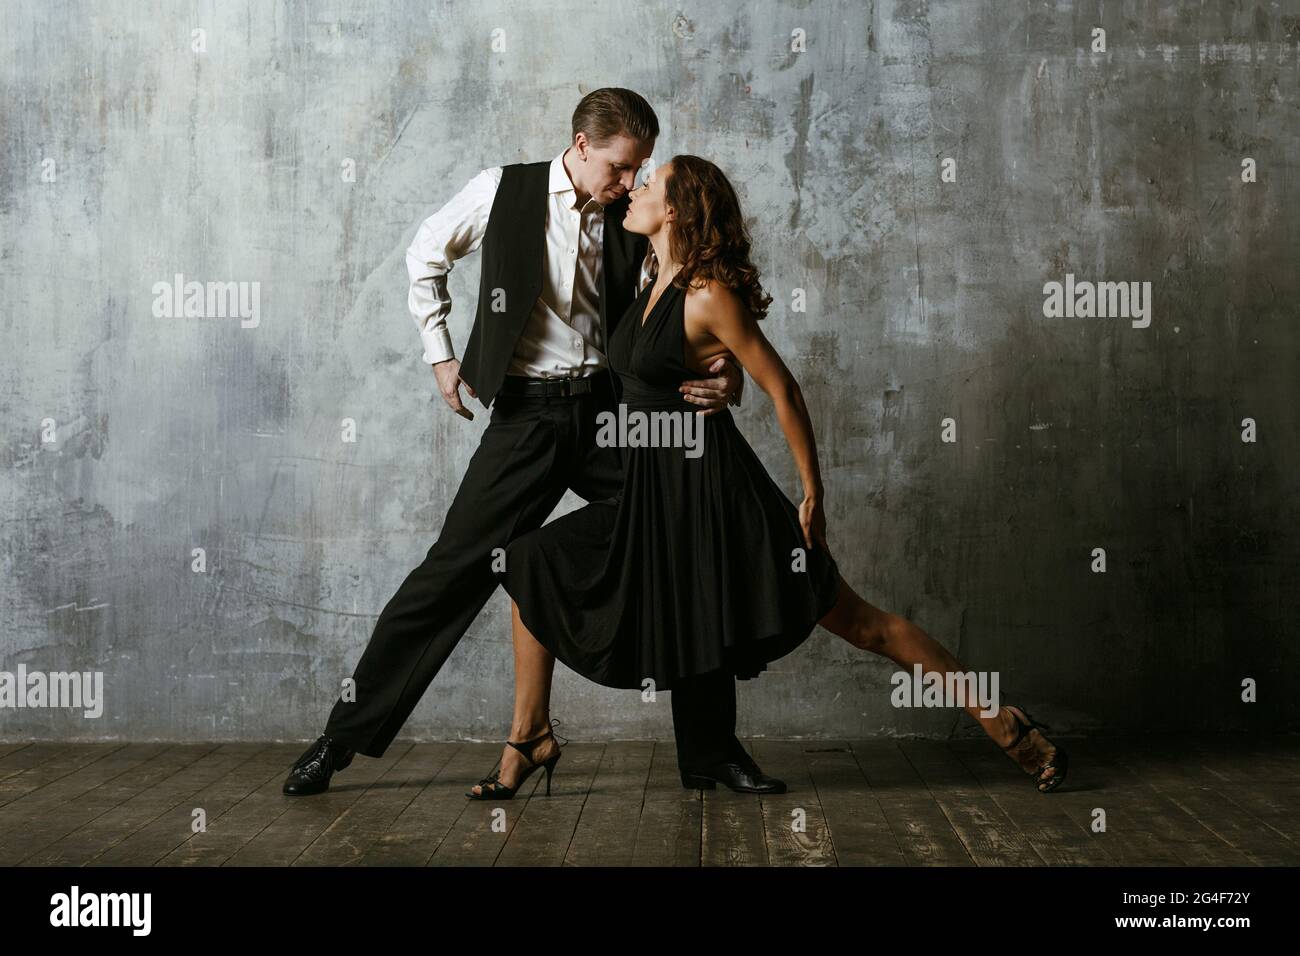 Abito da tango immagini e fotografie stock ad alta risoluzione - Alamy